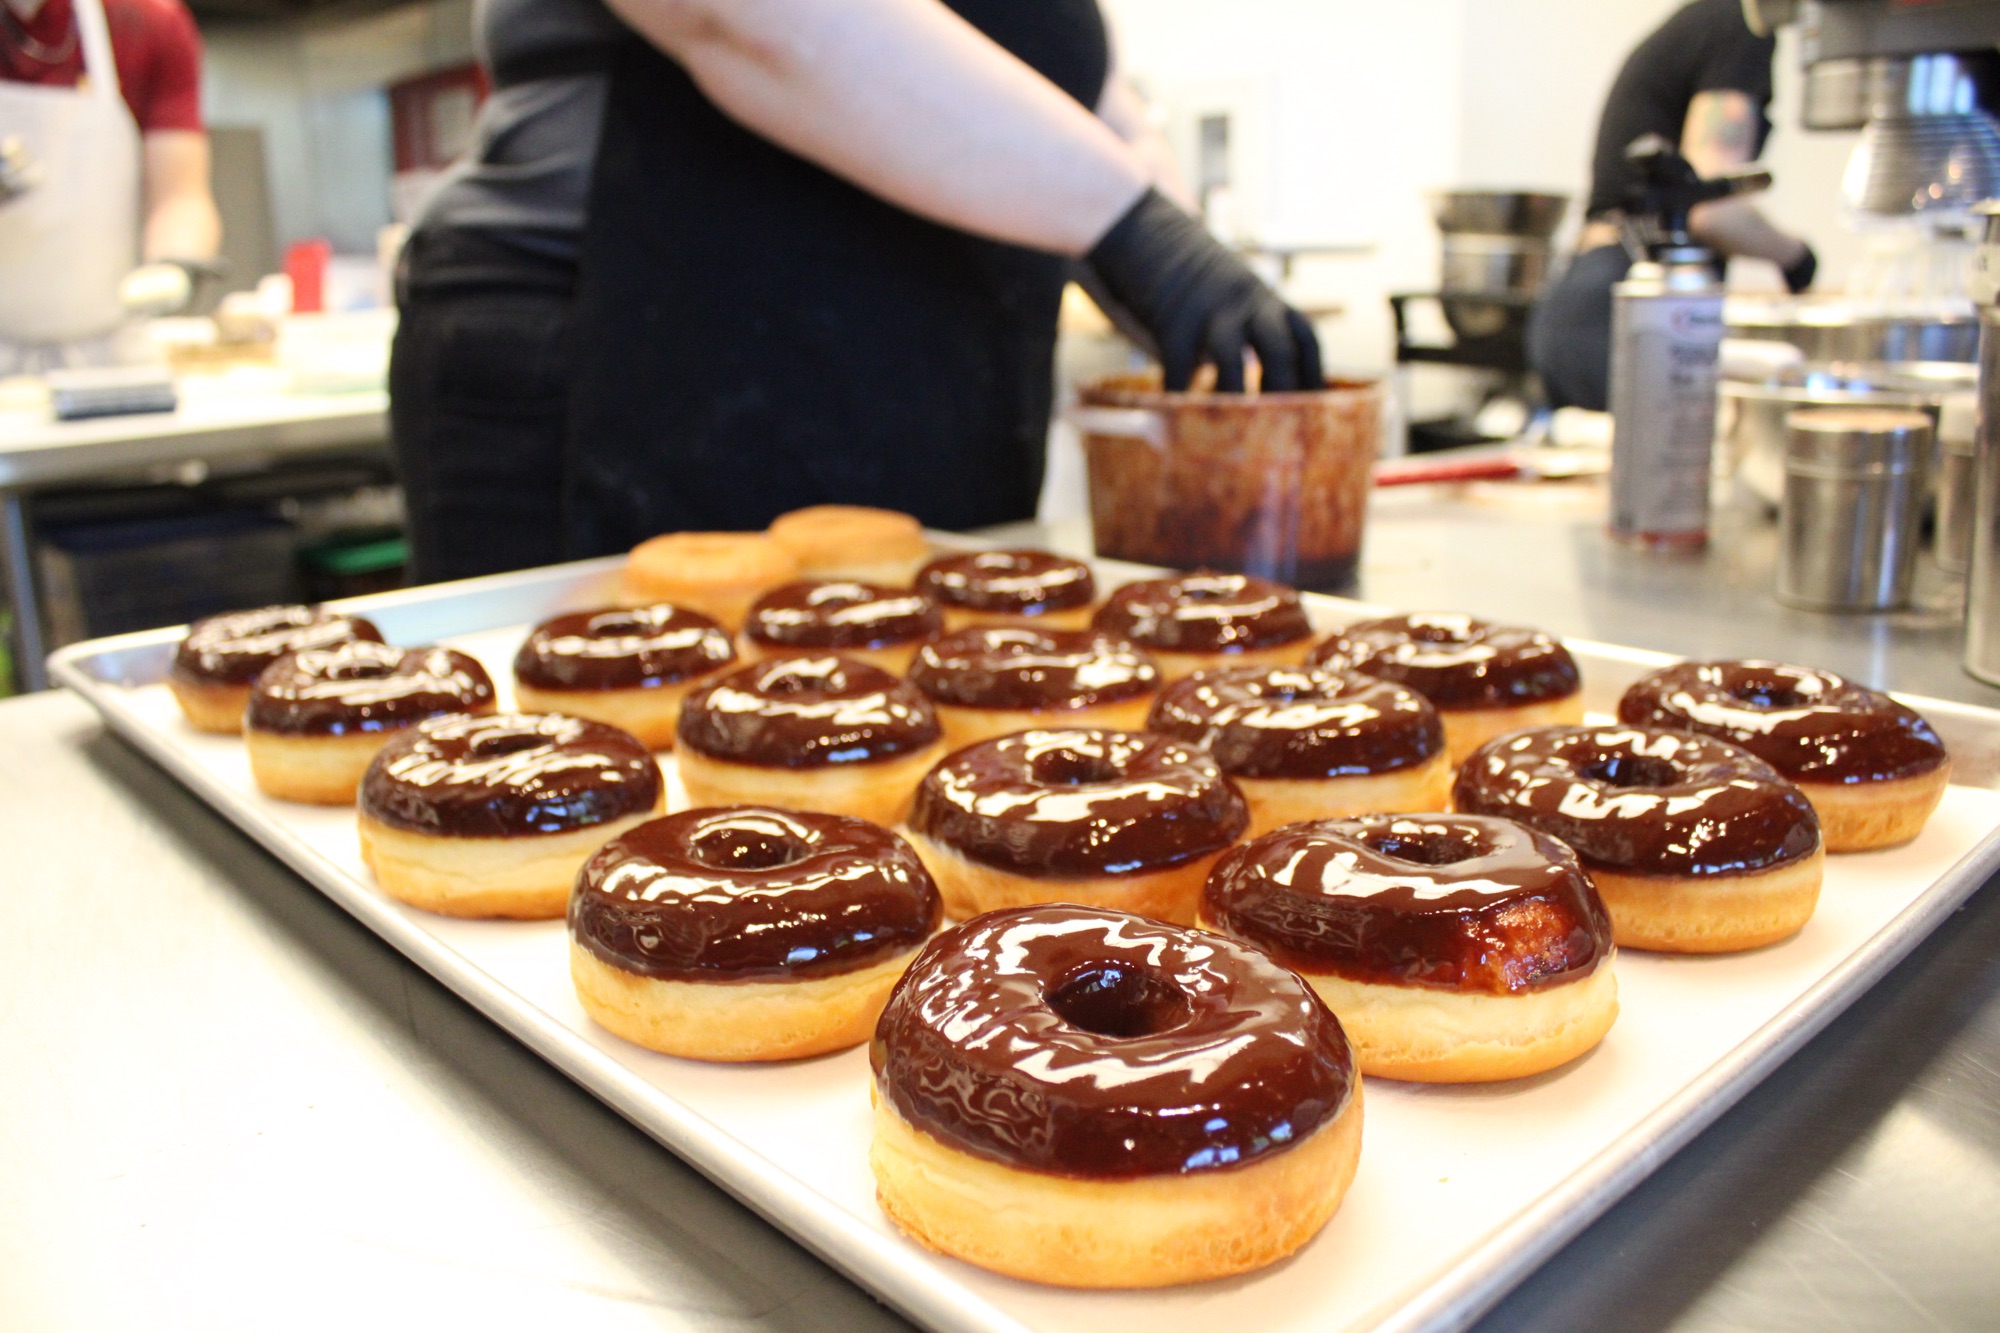 Sazón de WA: Doce Donut Co. offers rich brioche doughnuts inspired by Latino flavors